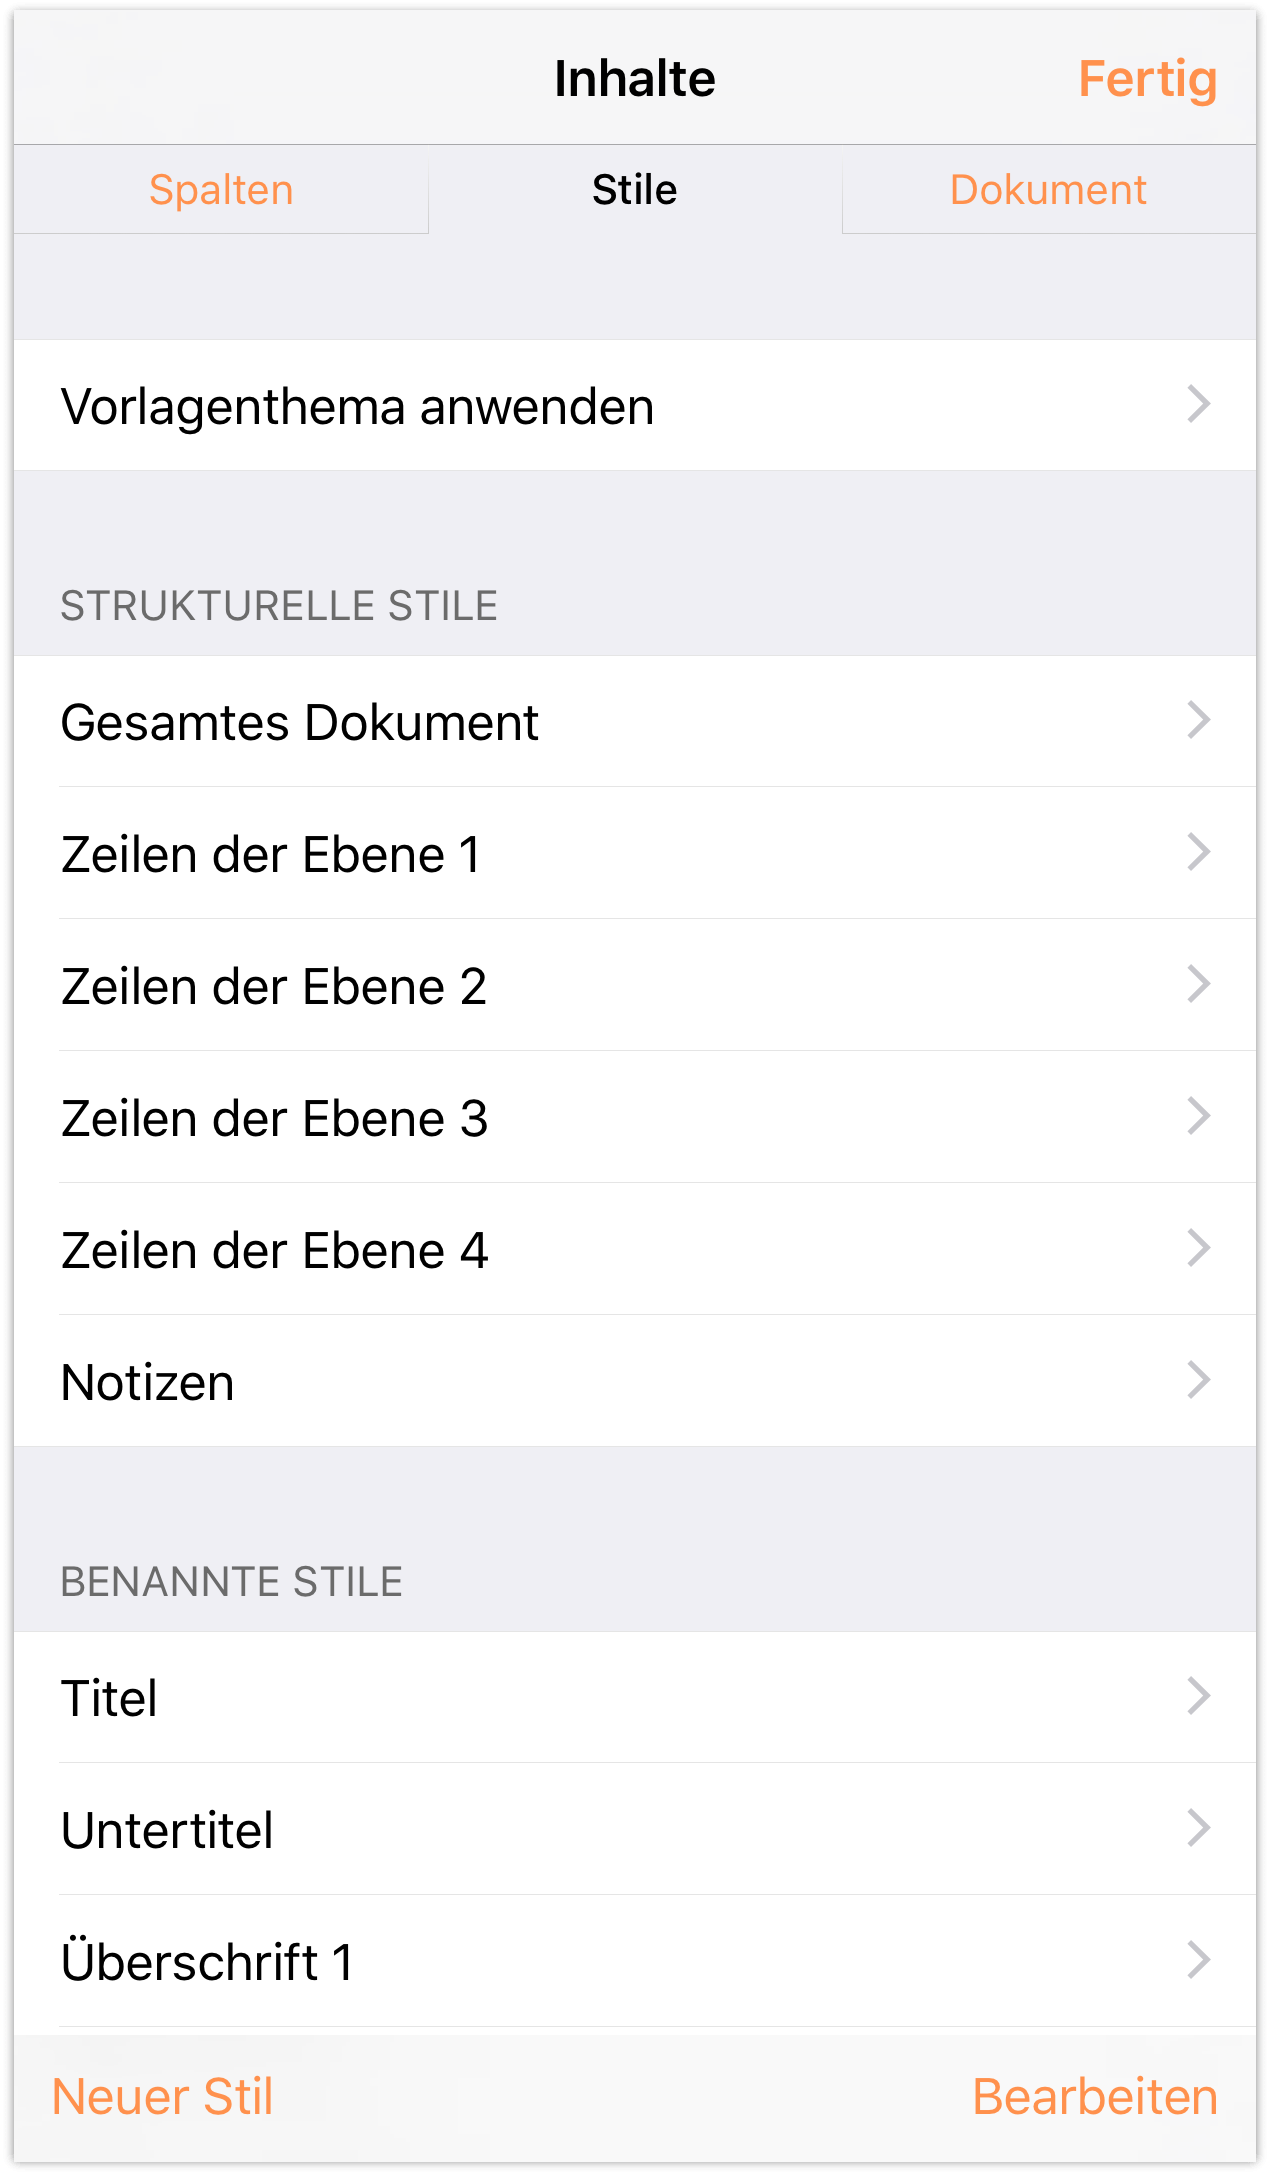 Bildschirm „Inhalte“ auf dem iPhone 6 Plus im Hochformat